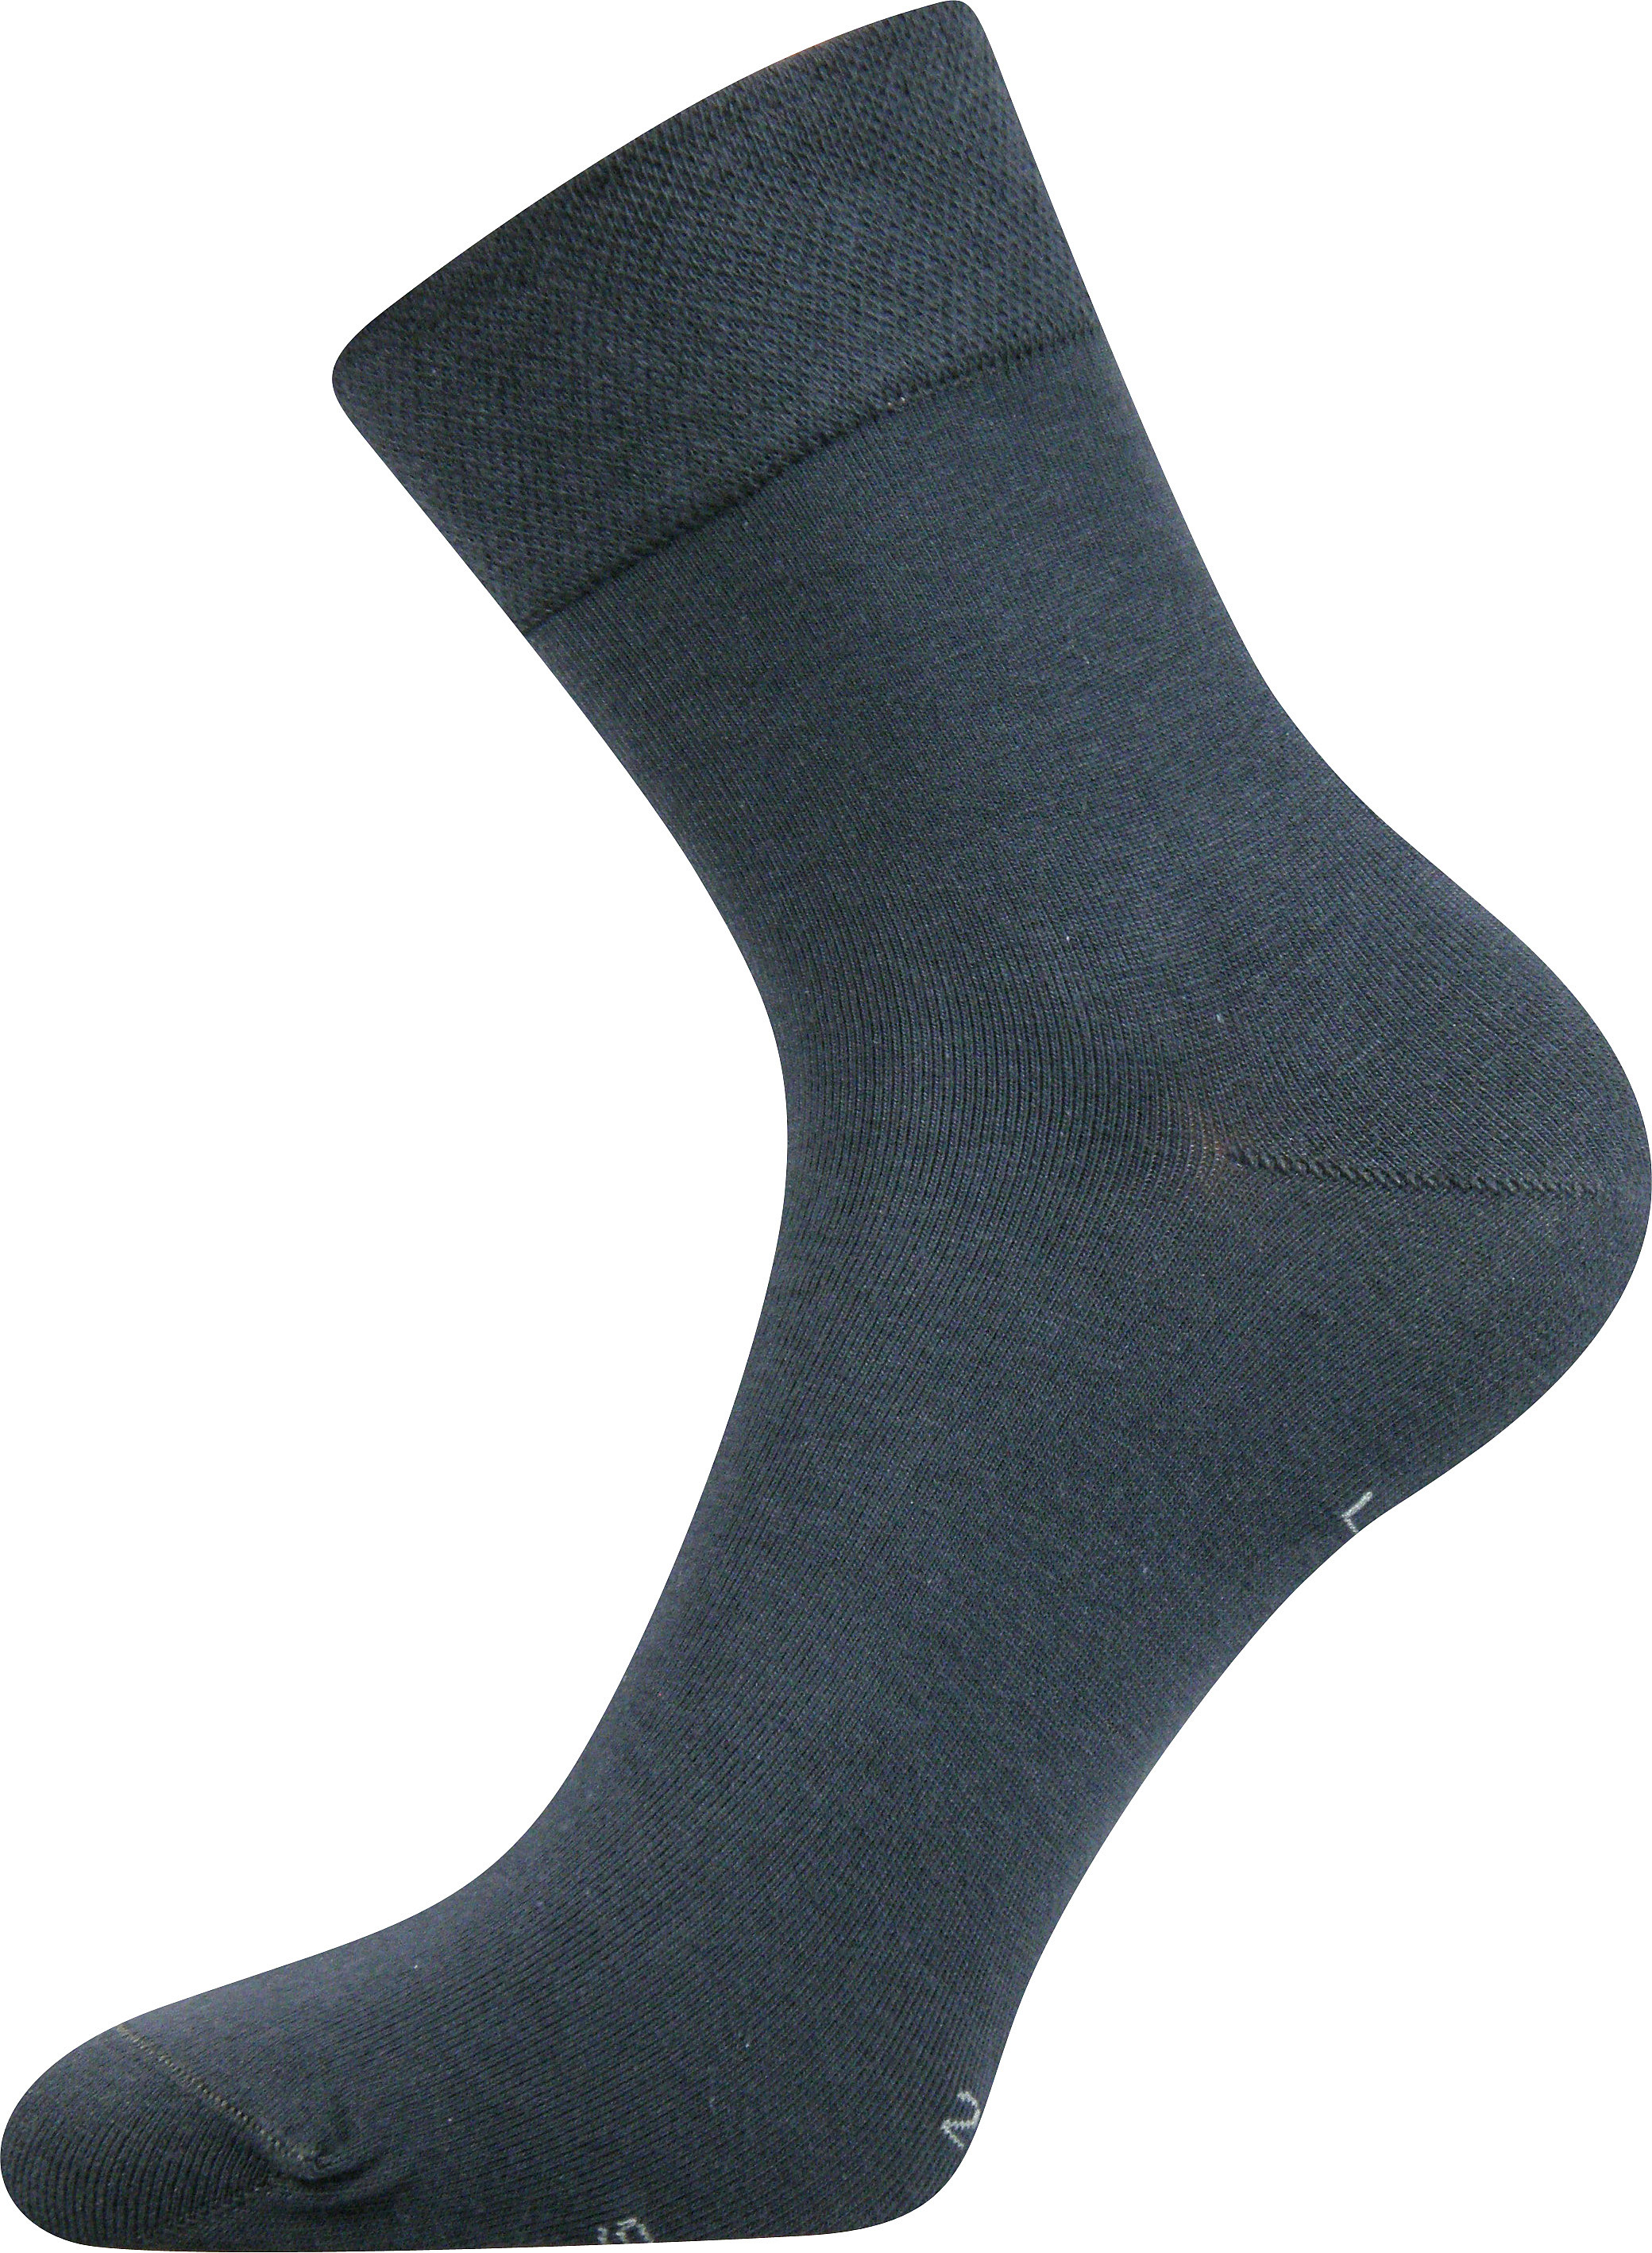 Ponožky společenské Lonka Haner - tmavě šedé, 43-46